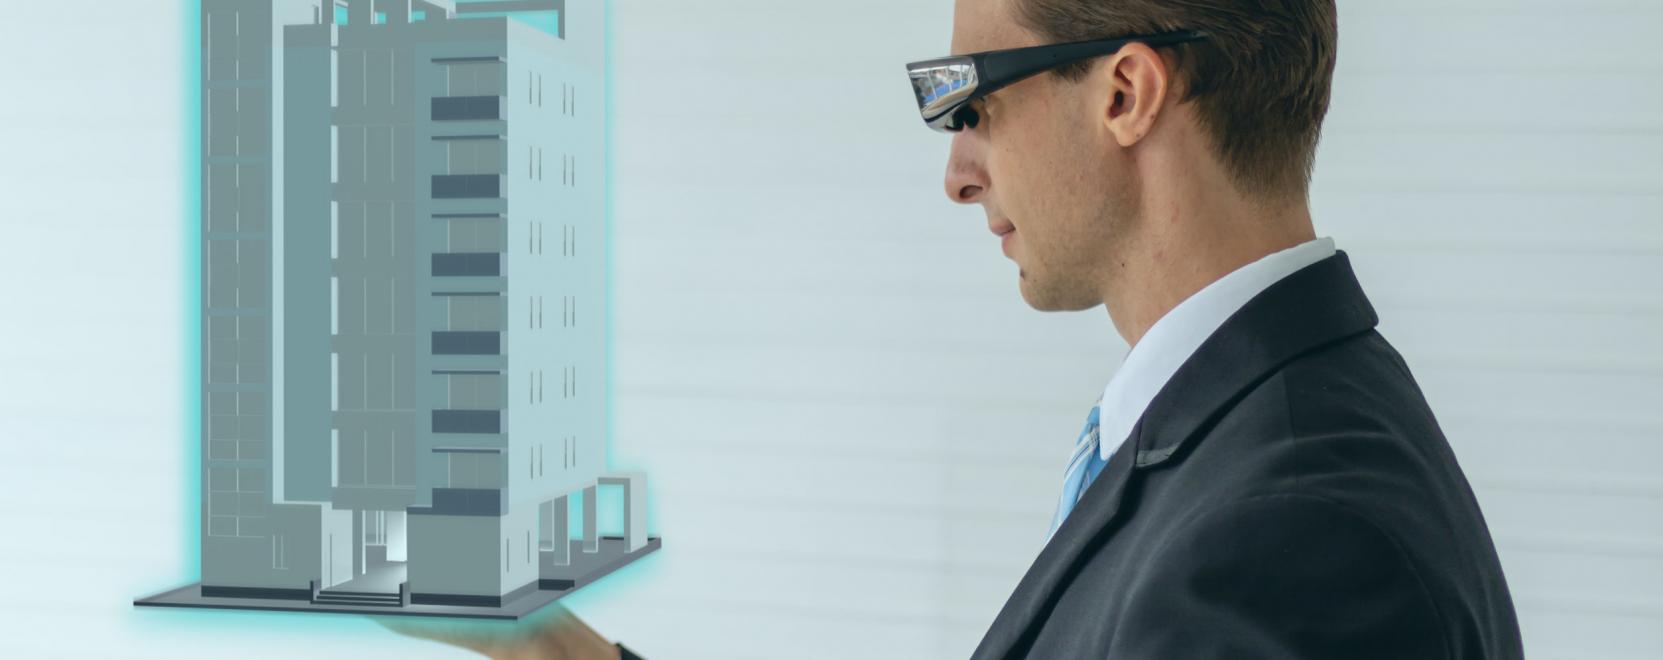 Mindenki számára hozzáférhető a Google Glass 2